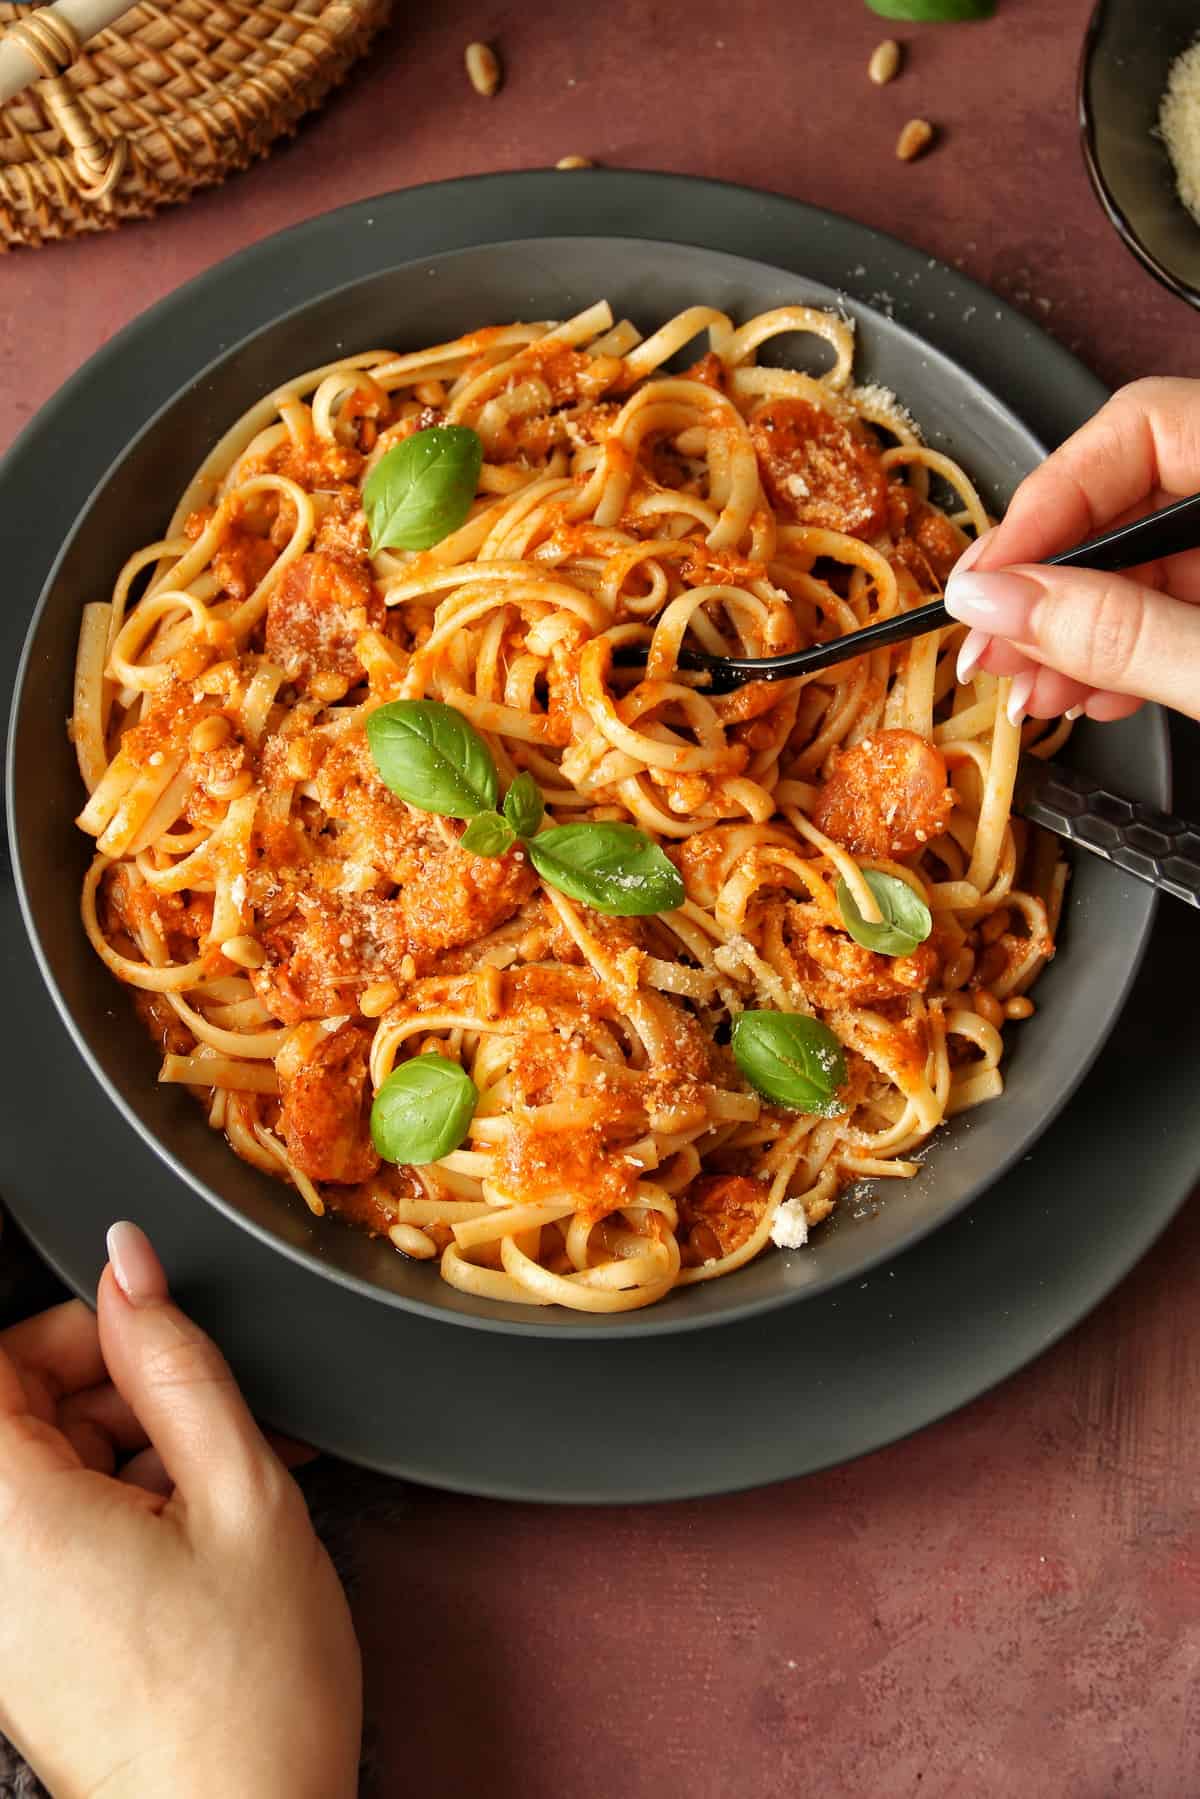 Pasta mit Pesto Rosso in einem dunkelgrauen Teller. Außerdem sind 2 Hände im Bild. Die eine hält die Gabel und die andere hält den Teller fest.